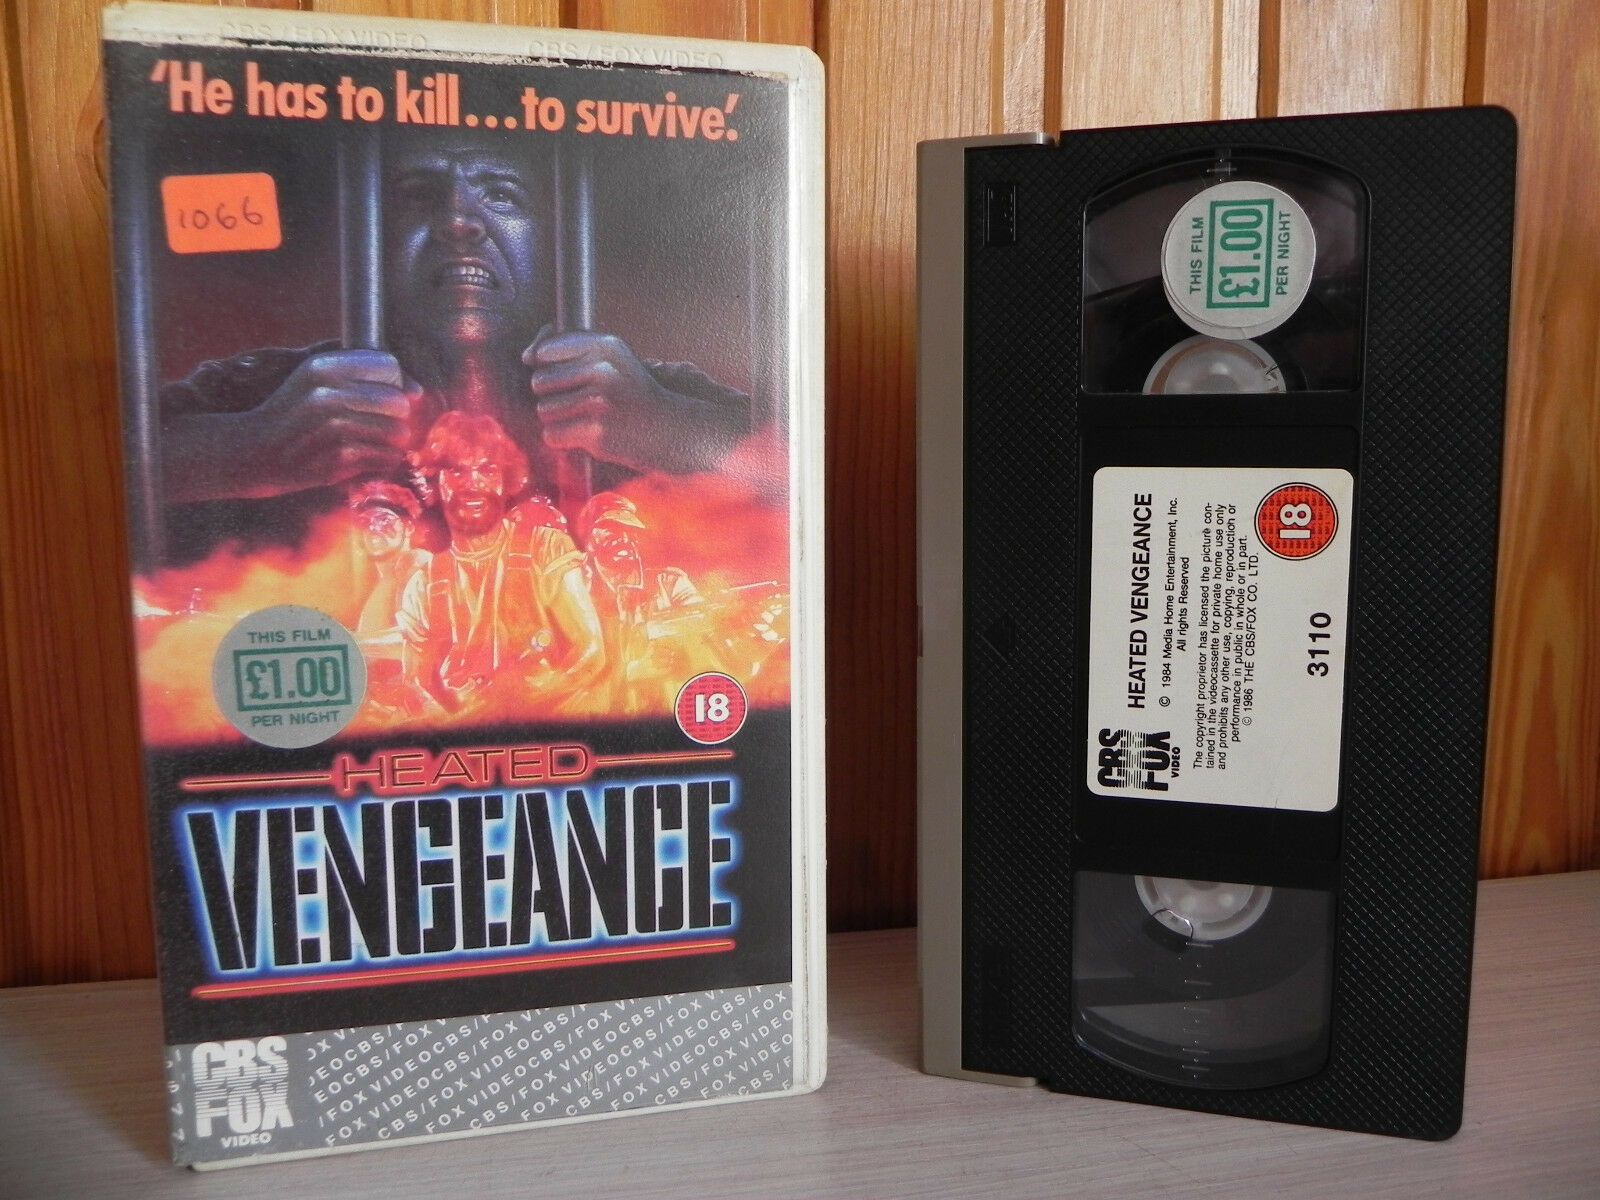 Heated Vengeance - Hardcore Mass Artillery Showdown - Serious Action - VHS-